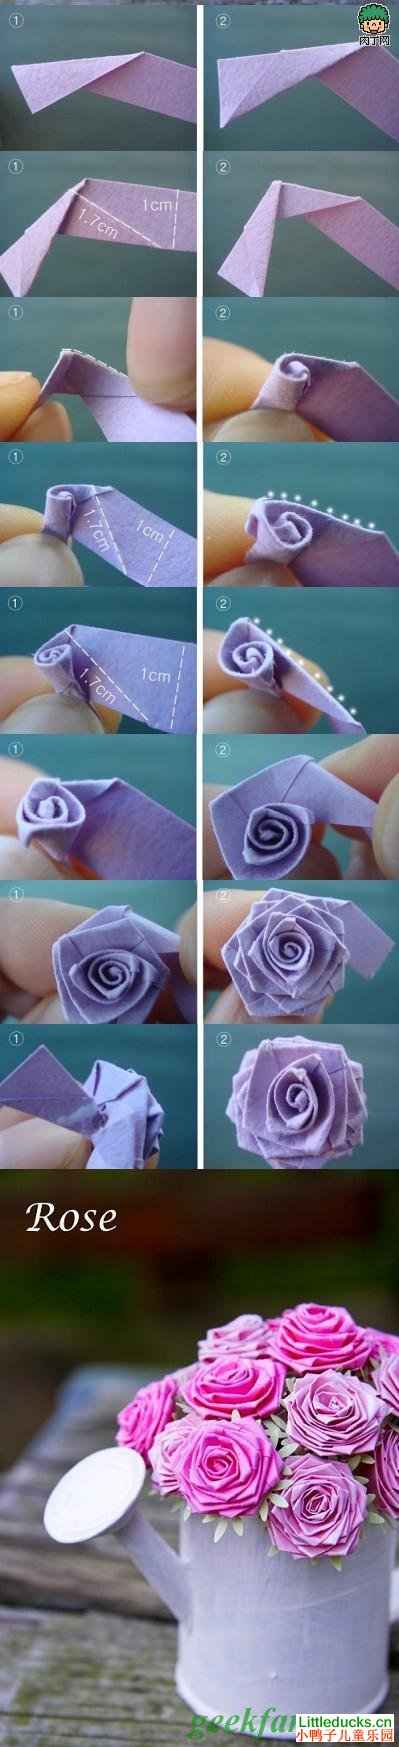 儿童折纸教程:玫瑰的折纸方法